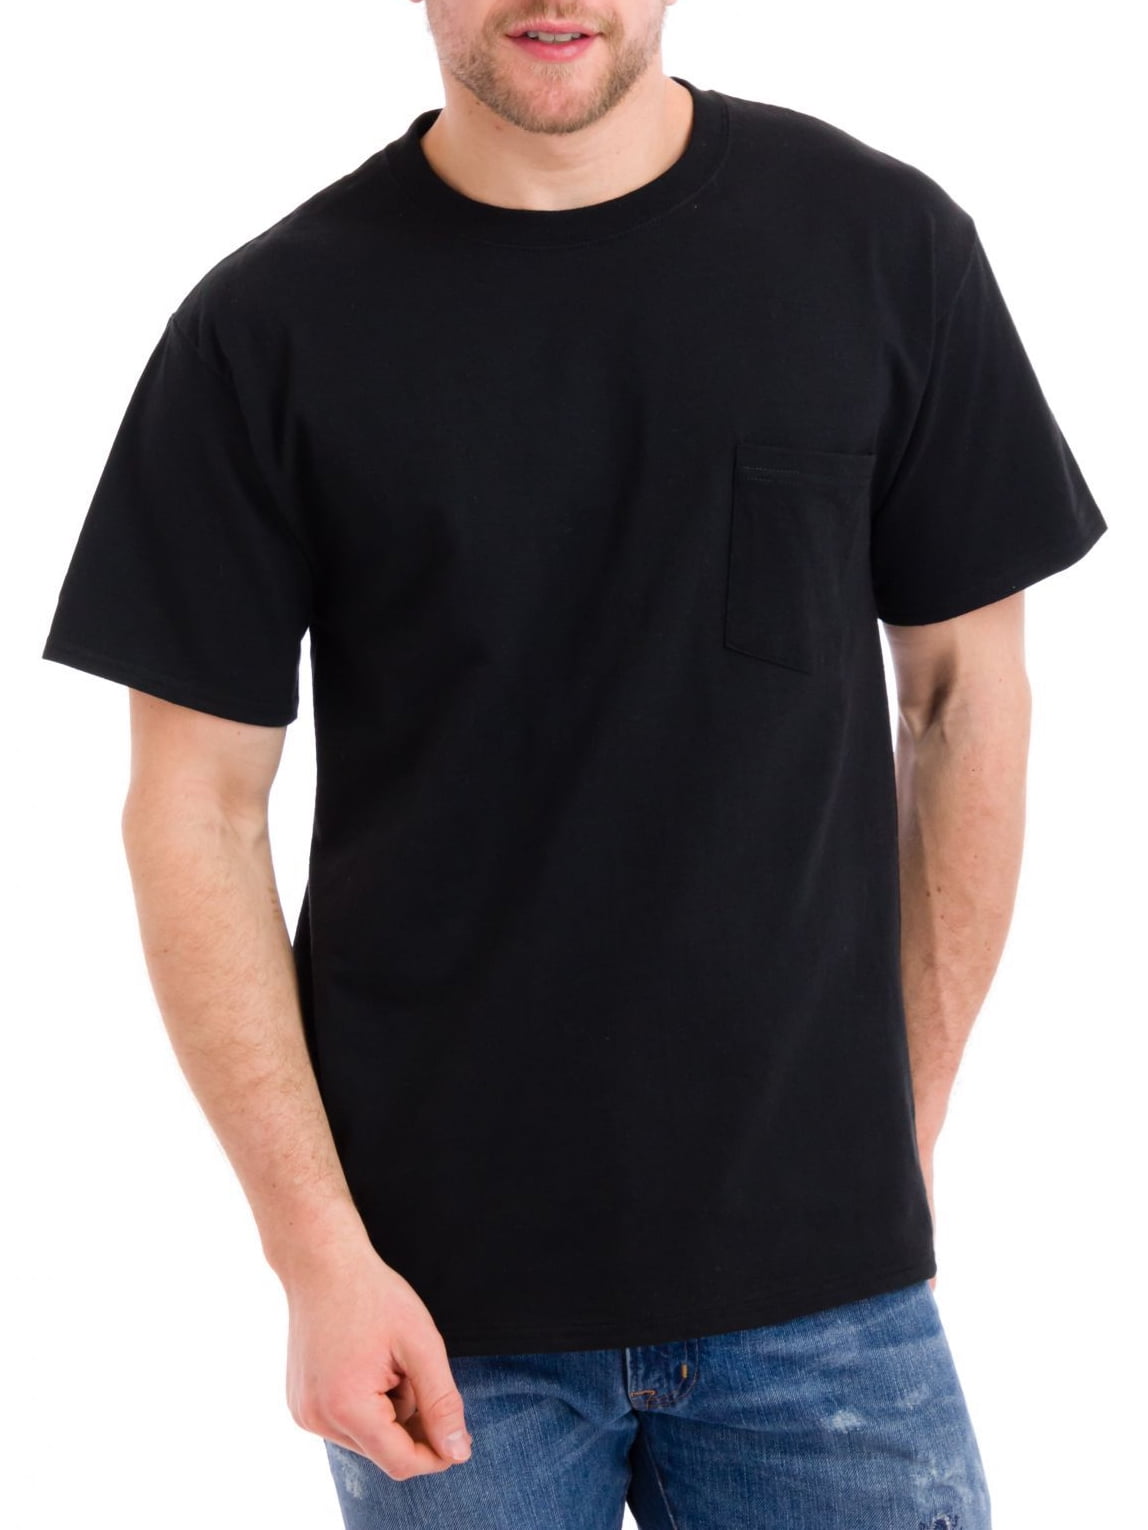 Hanes - Hanes Men's Tagless Pocket T-Shirt, Black, Small ...